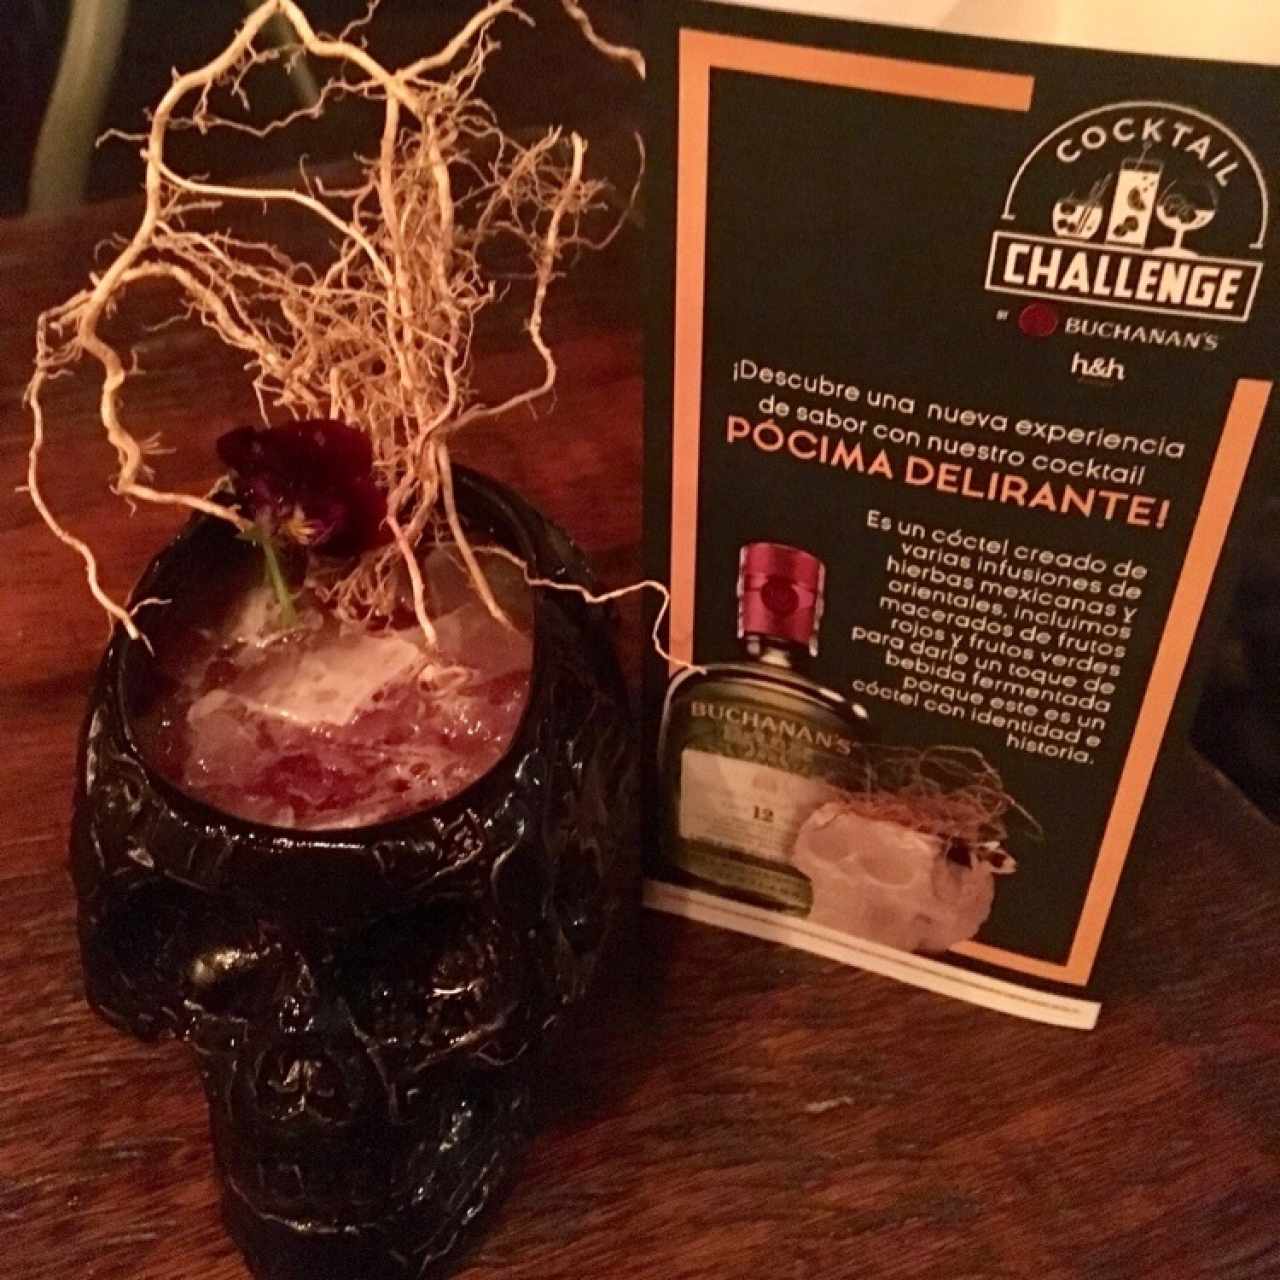 Pócima - trago del Cocktail challenge